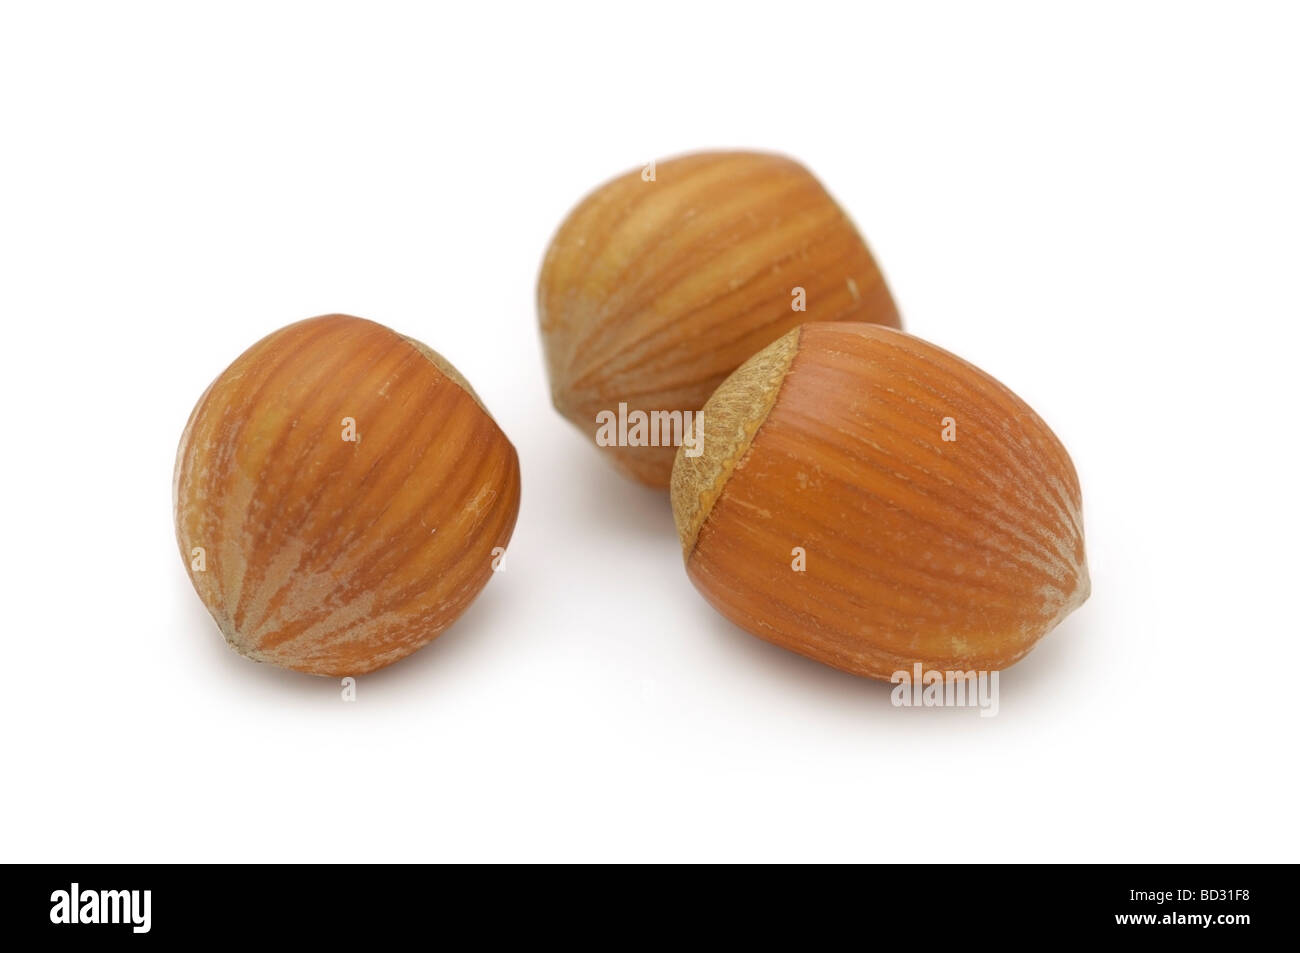 Hazelnuts / Filberts Stock Photo